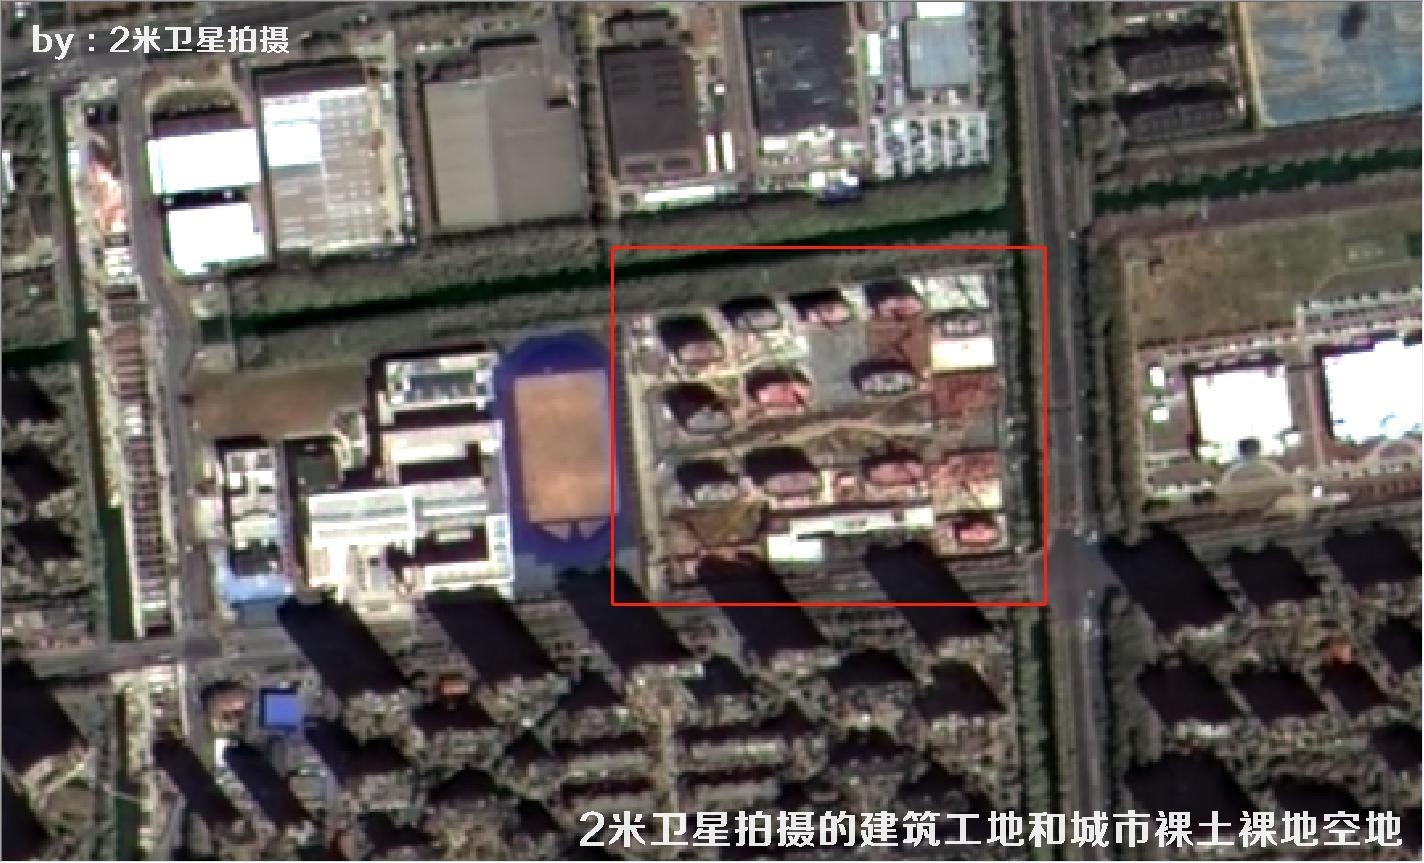 2米分辨率卫星拍摄的苏州市建筑工地和城市裸土裸地空地